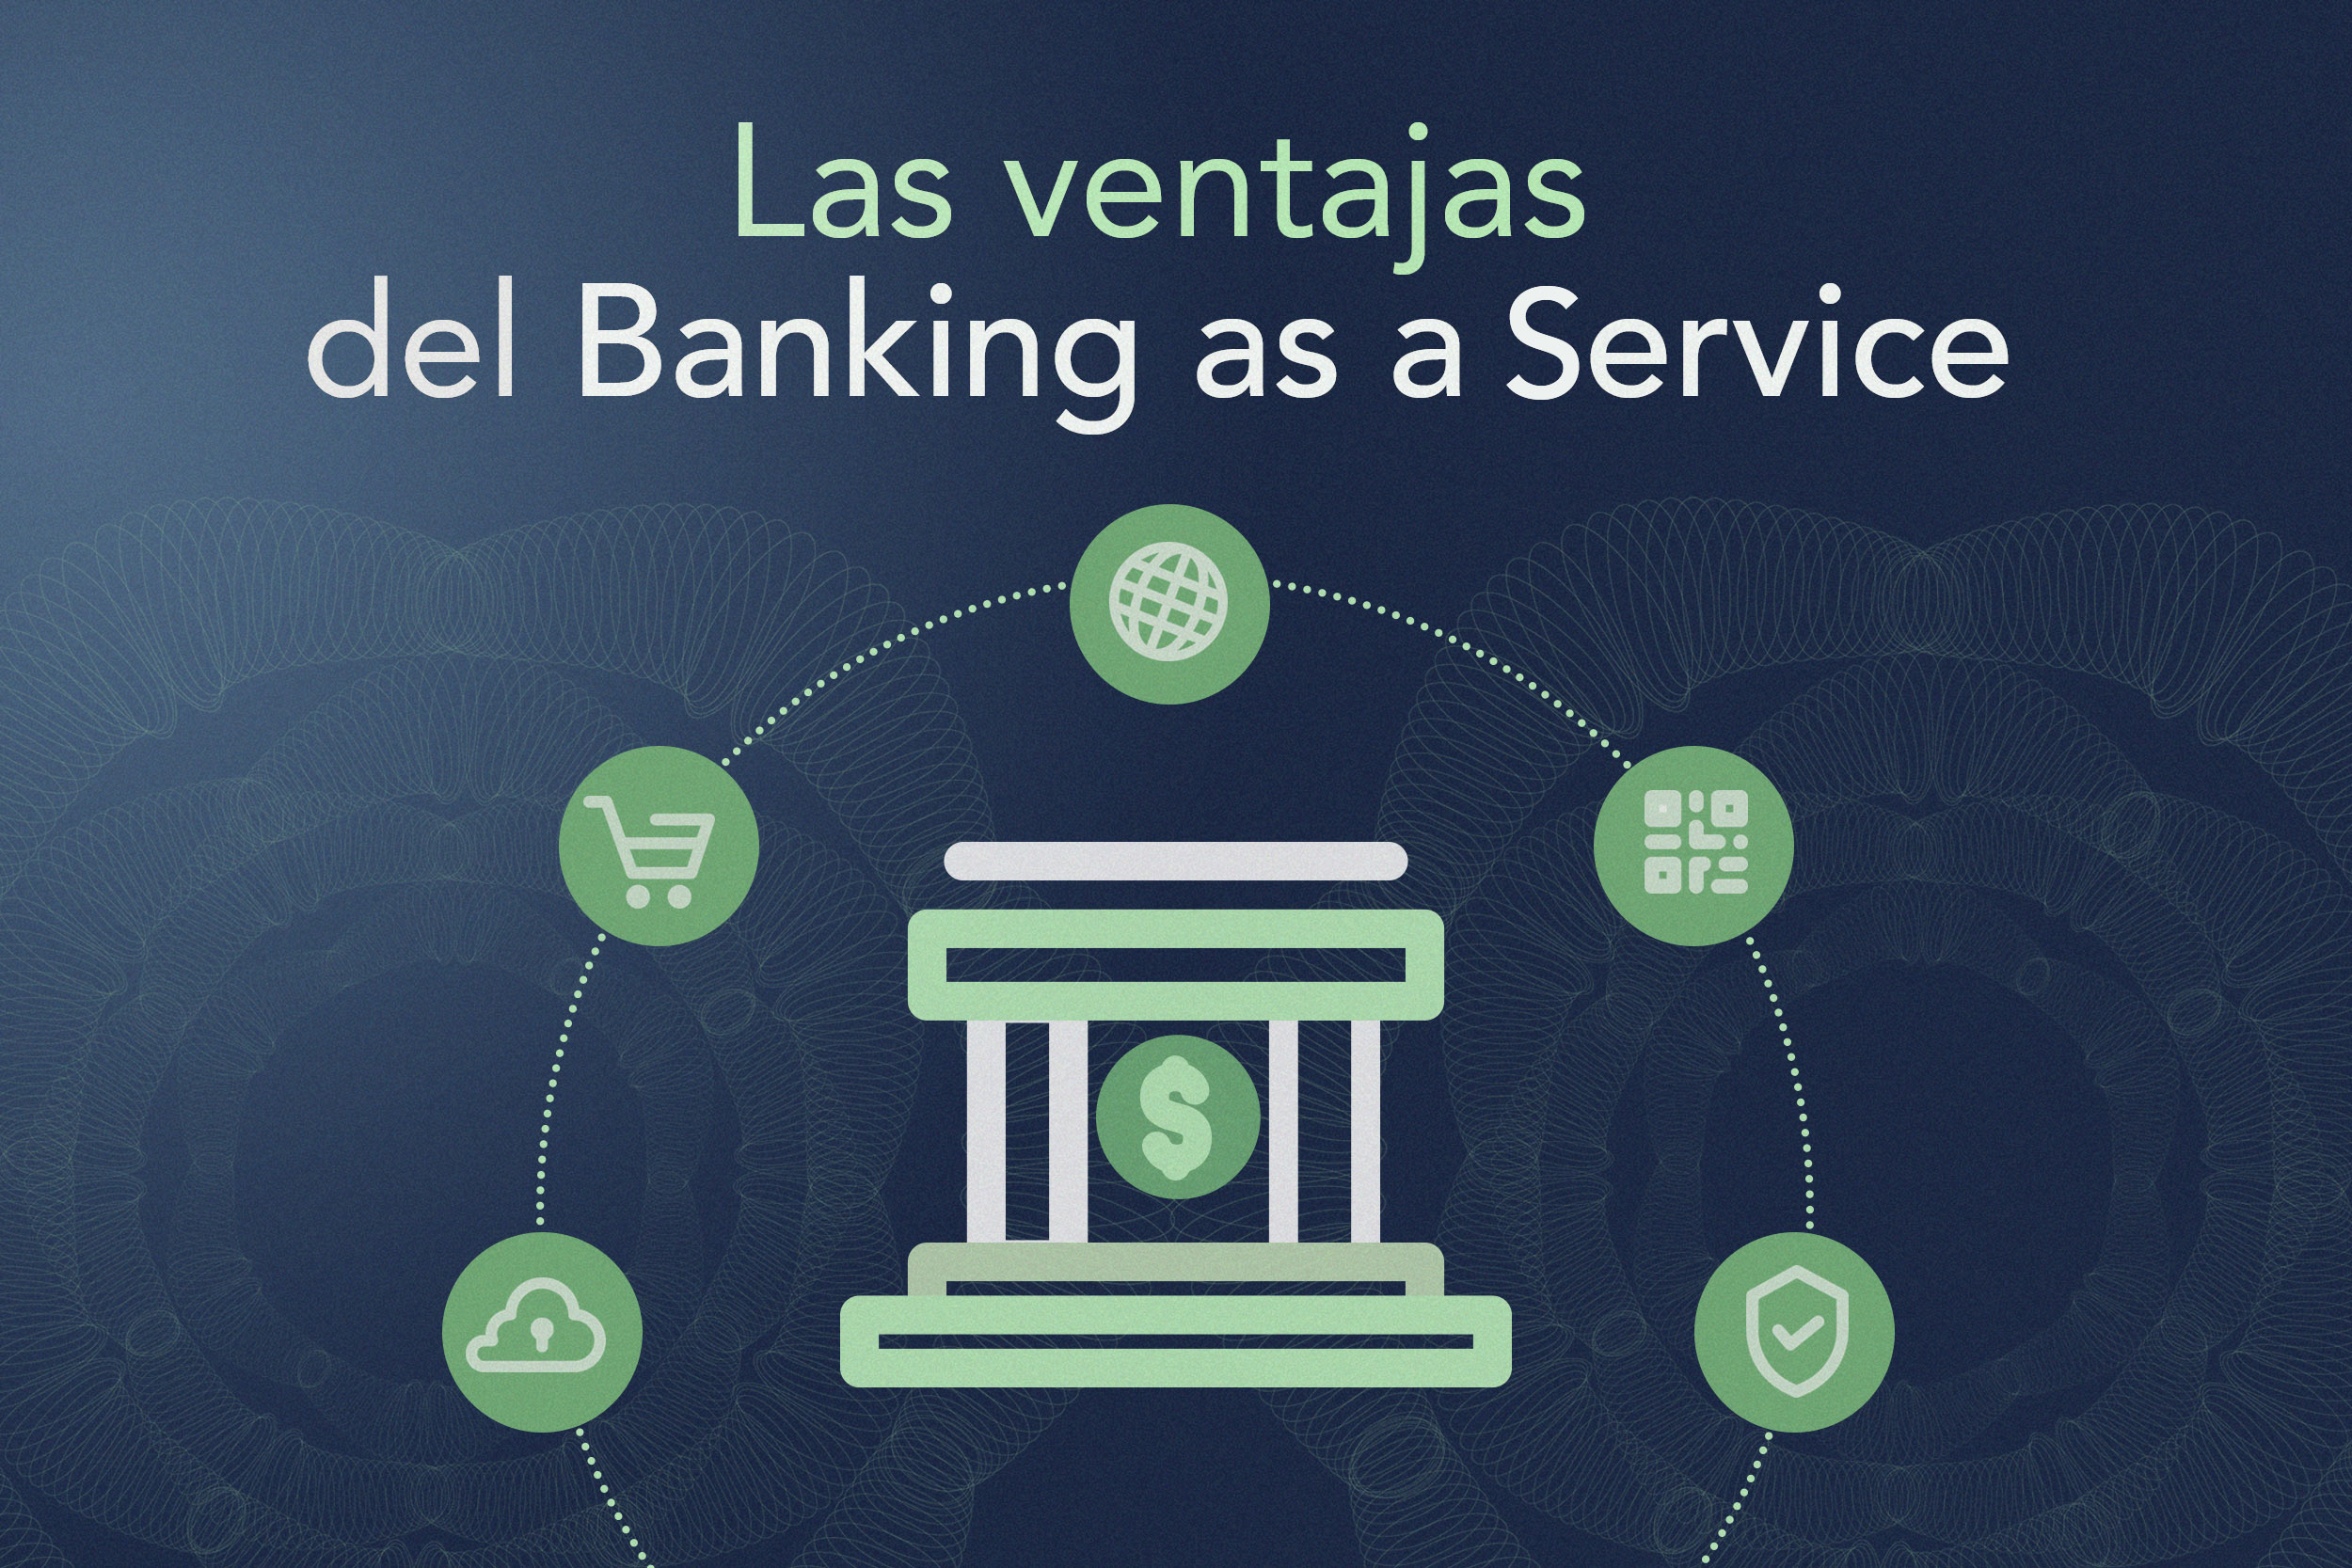 Las ventajas del banking as a service